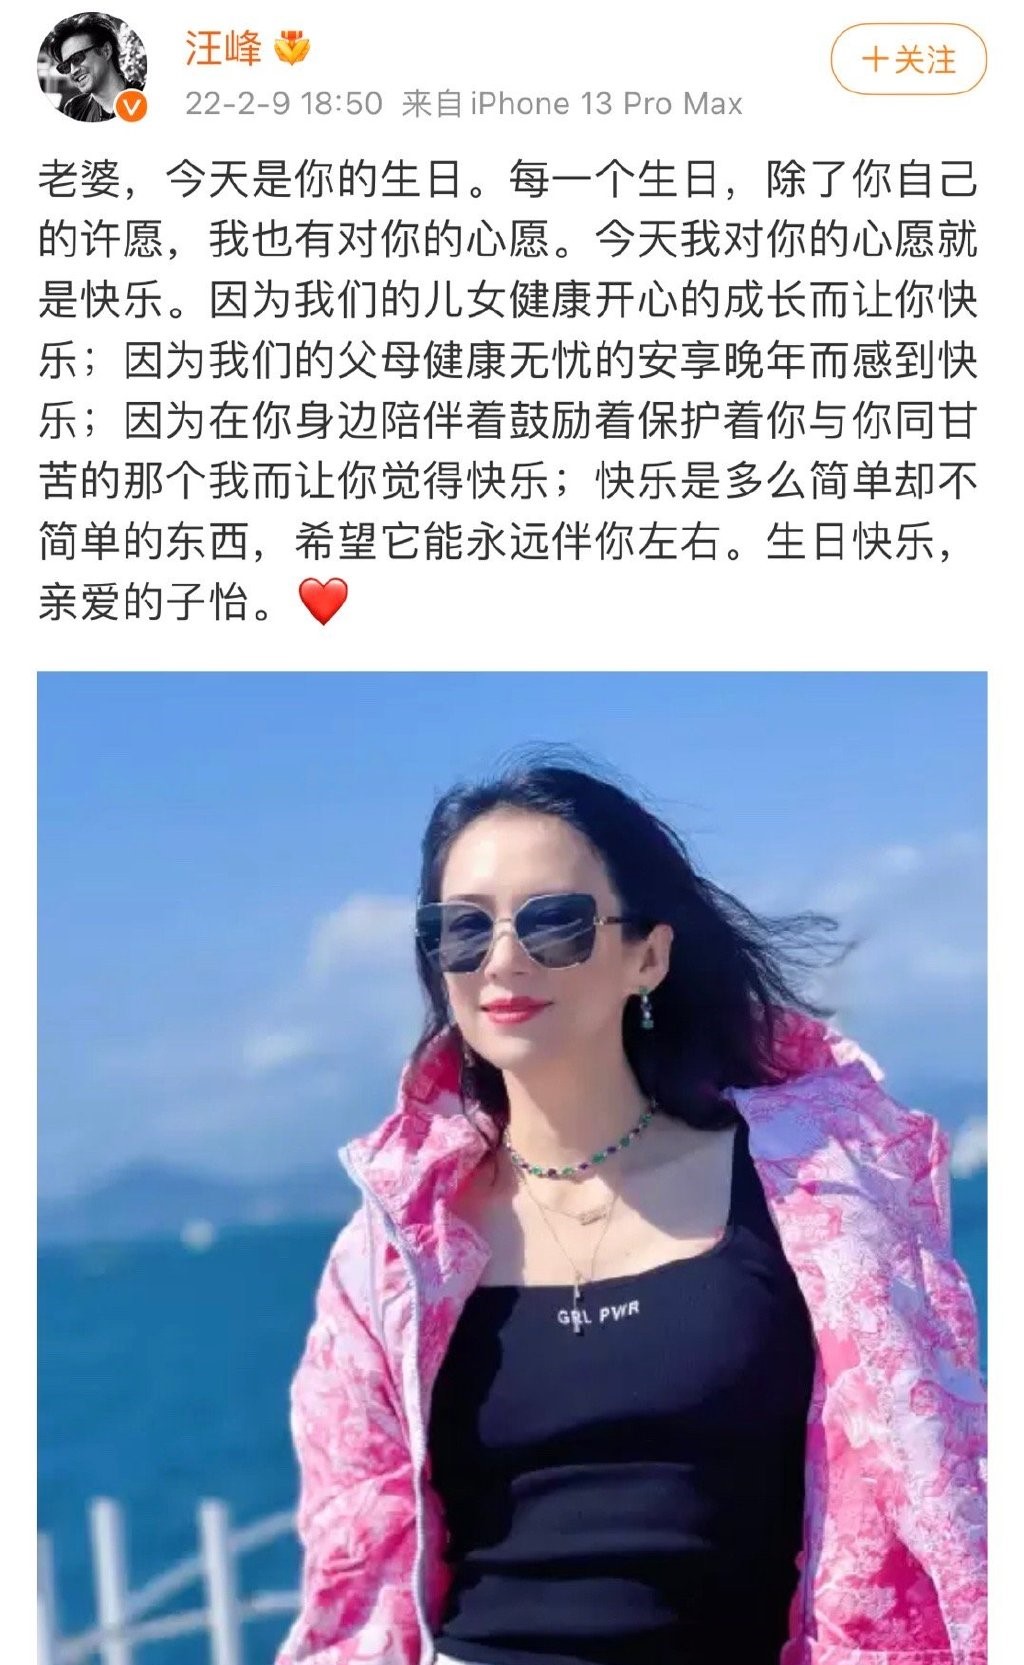 网民挖出汪峰每年都会在微博祝福老婆生日，高调晒恩爱，惟今年却反常地没有公开发文祝贺，因而被推测婚变早有先兆。